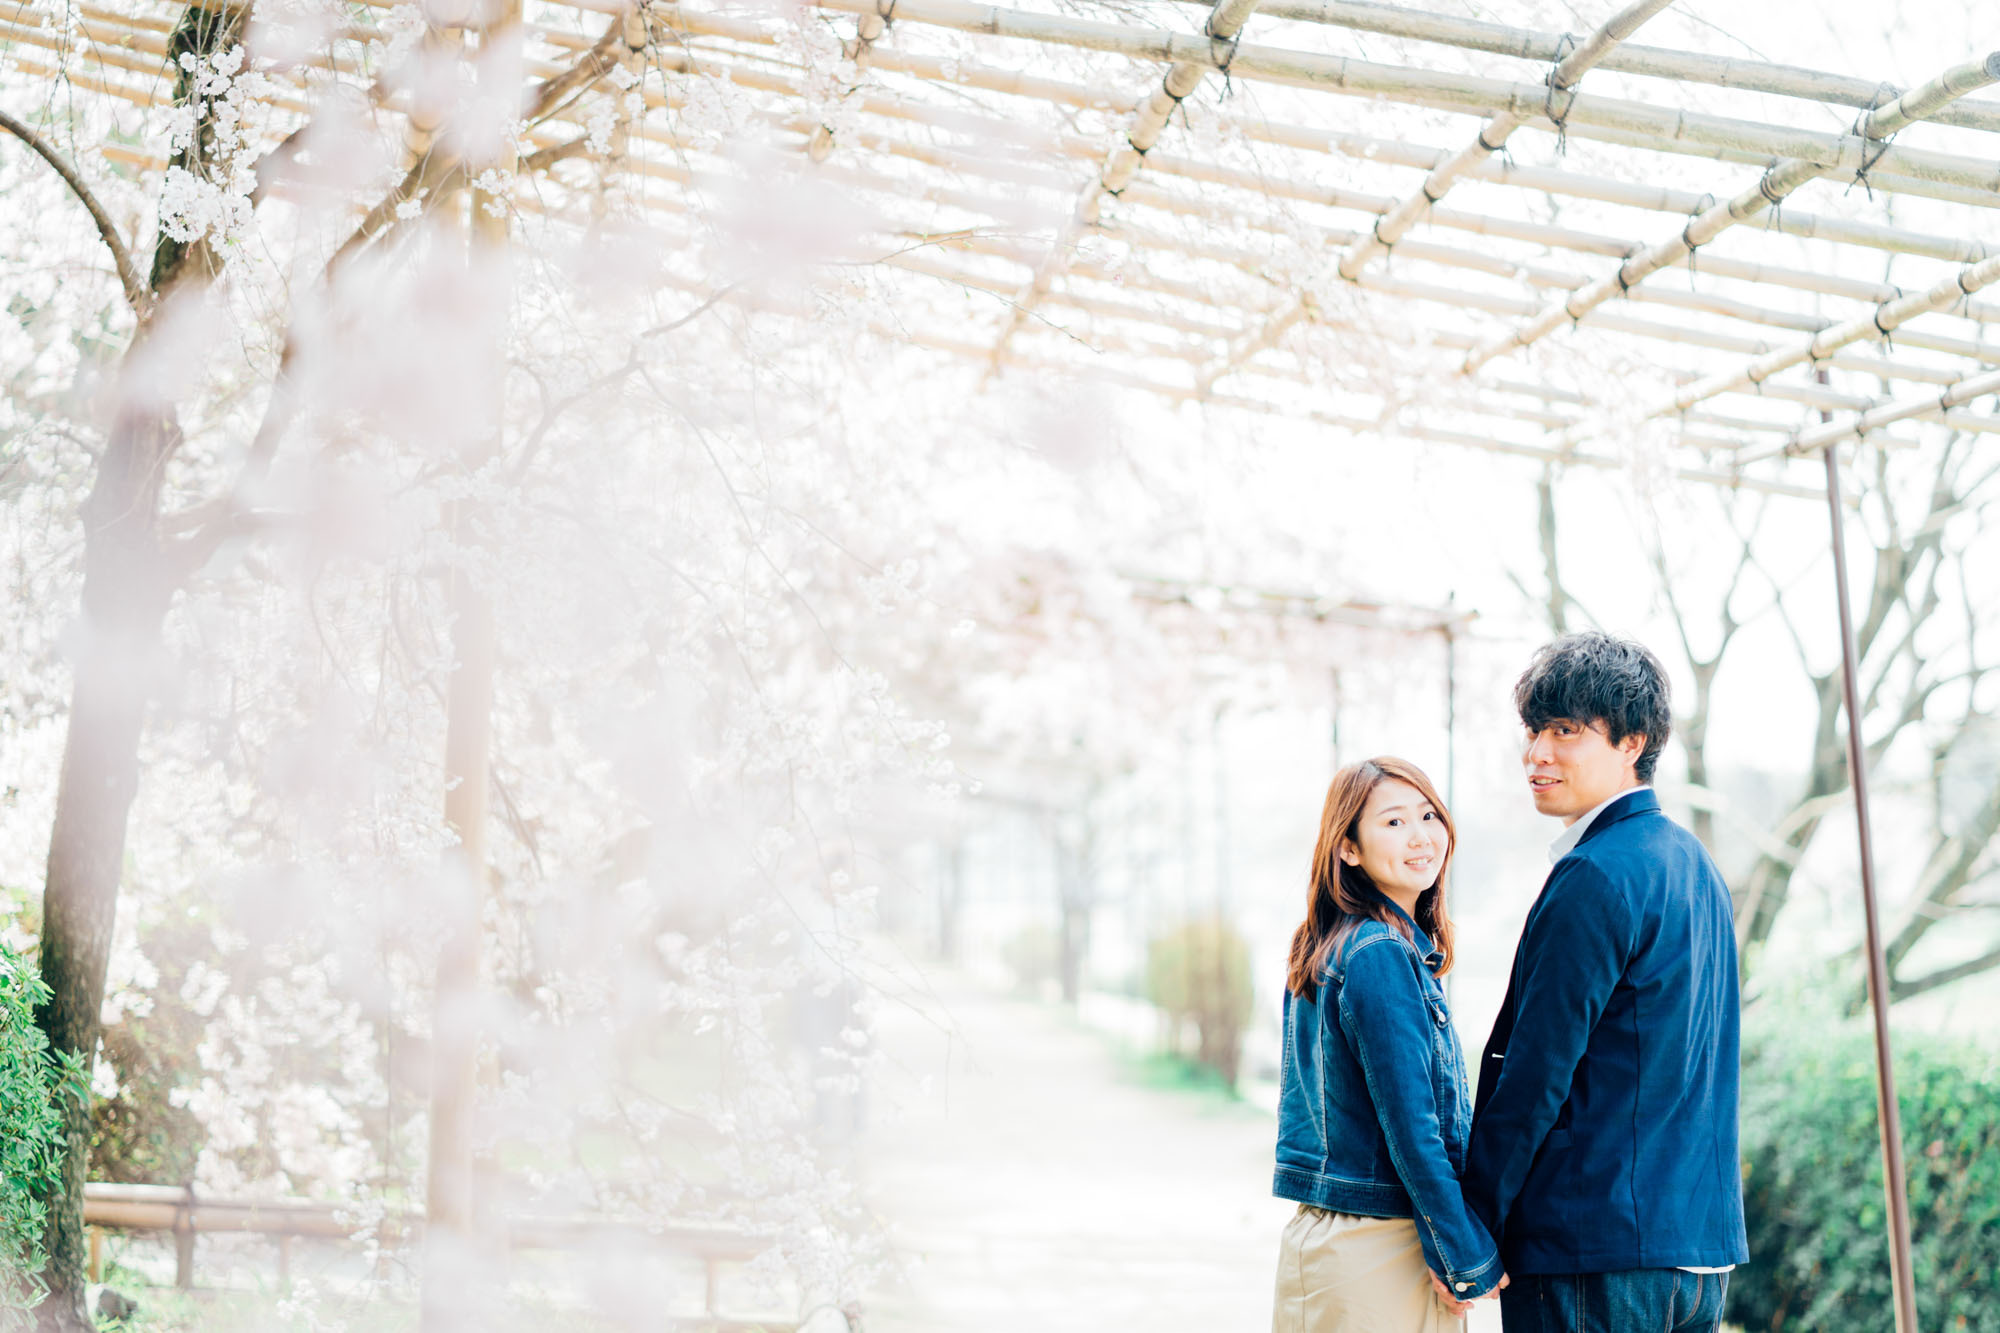 京都での桜前撮りロケーション撮影出張カメラマン